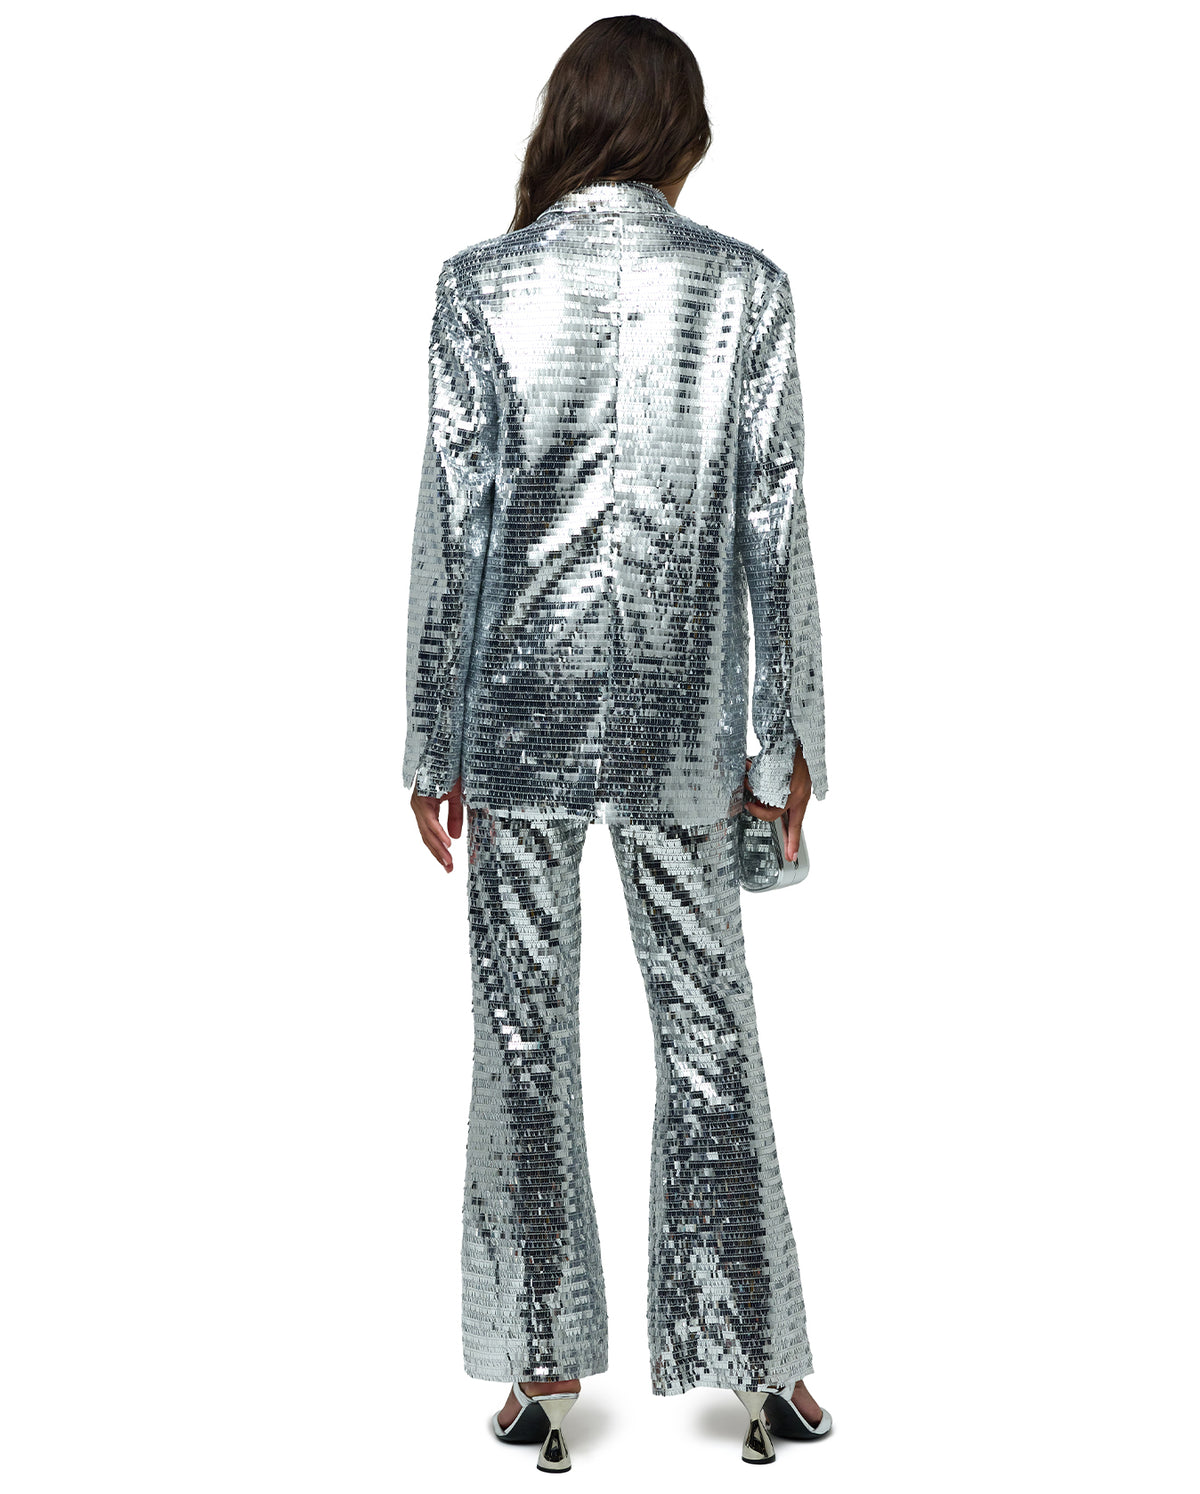 Sequin Robo Pant - Silver